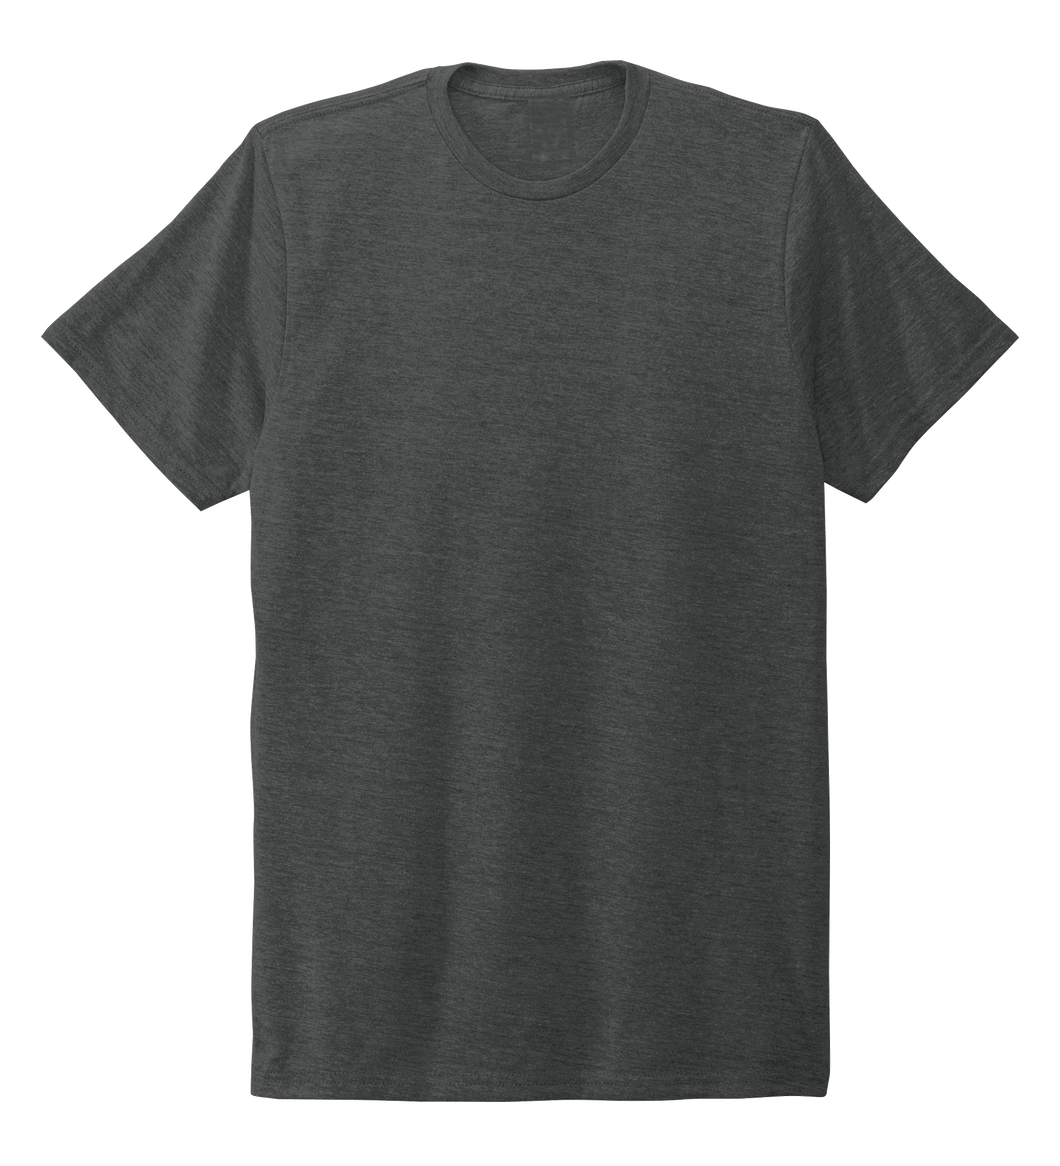 Unisex Crew Neck T-shirt in Slate Black